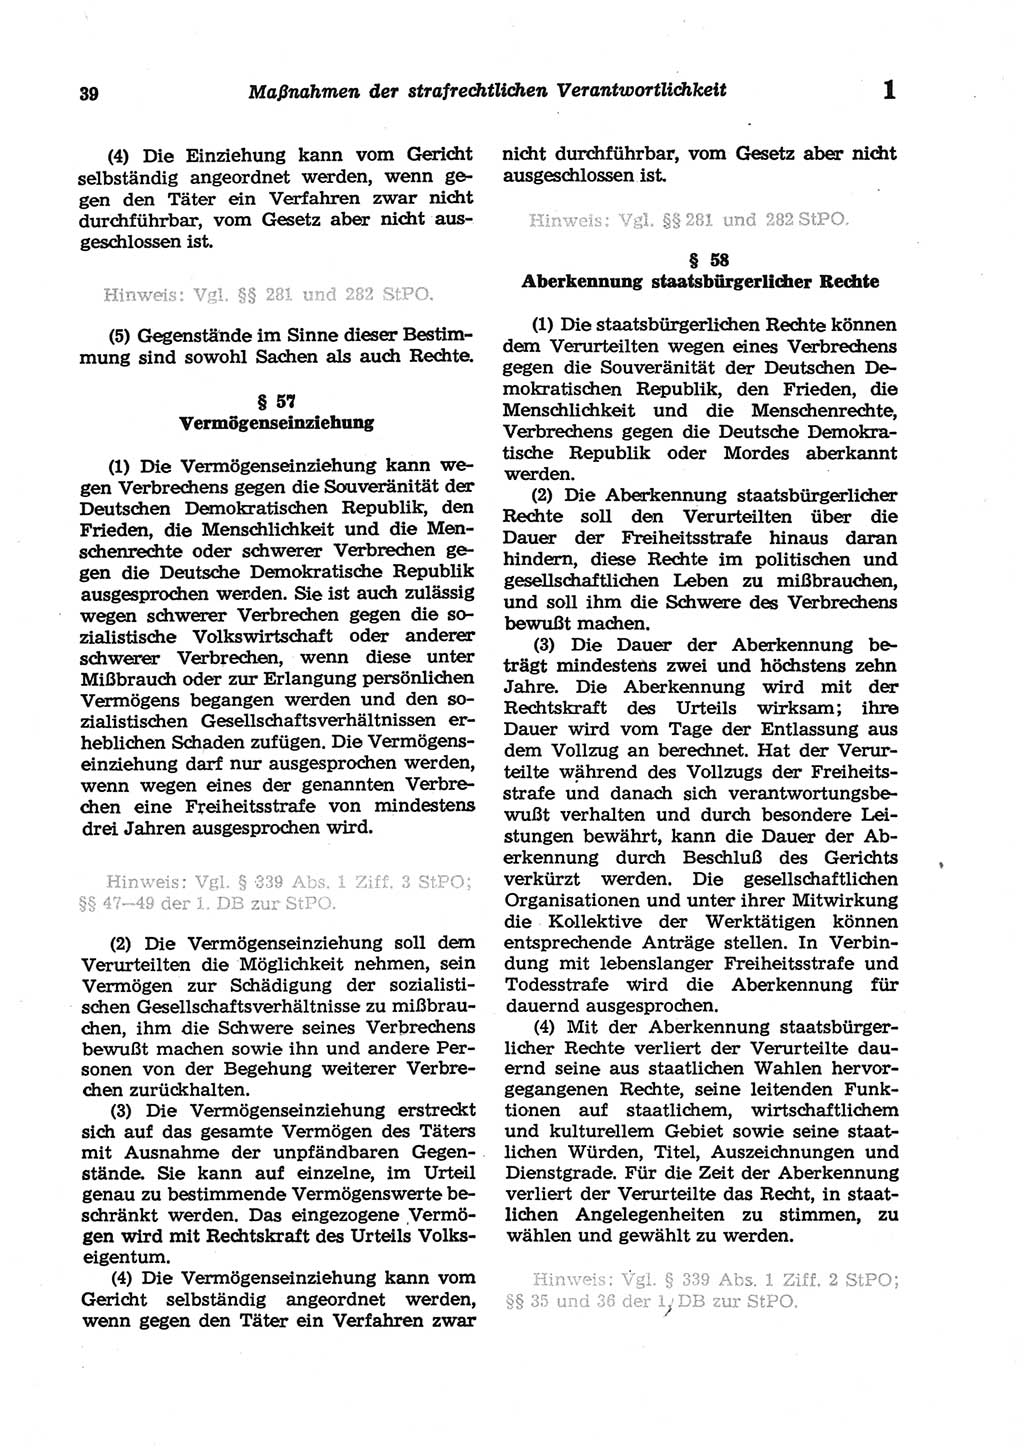 Strafgesetzbuch (StGB) der Deutschen Demokratischen Republik (DDR) und angrenzende Gesetze und Bestimmungen 1977, Seite 39 (StGB DDR Ges. Best. 1977, S. 39)